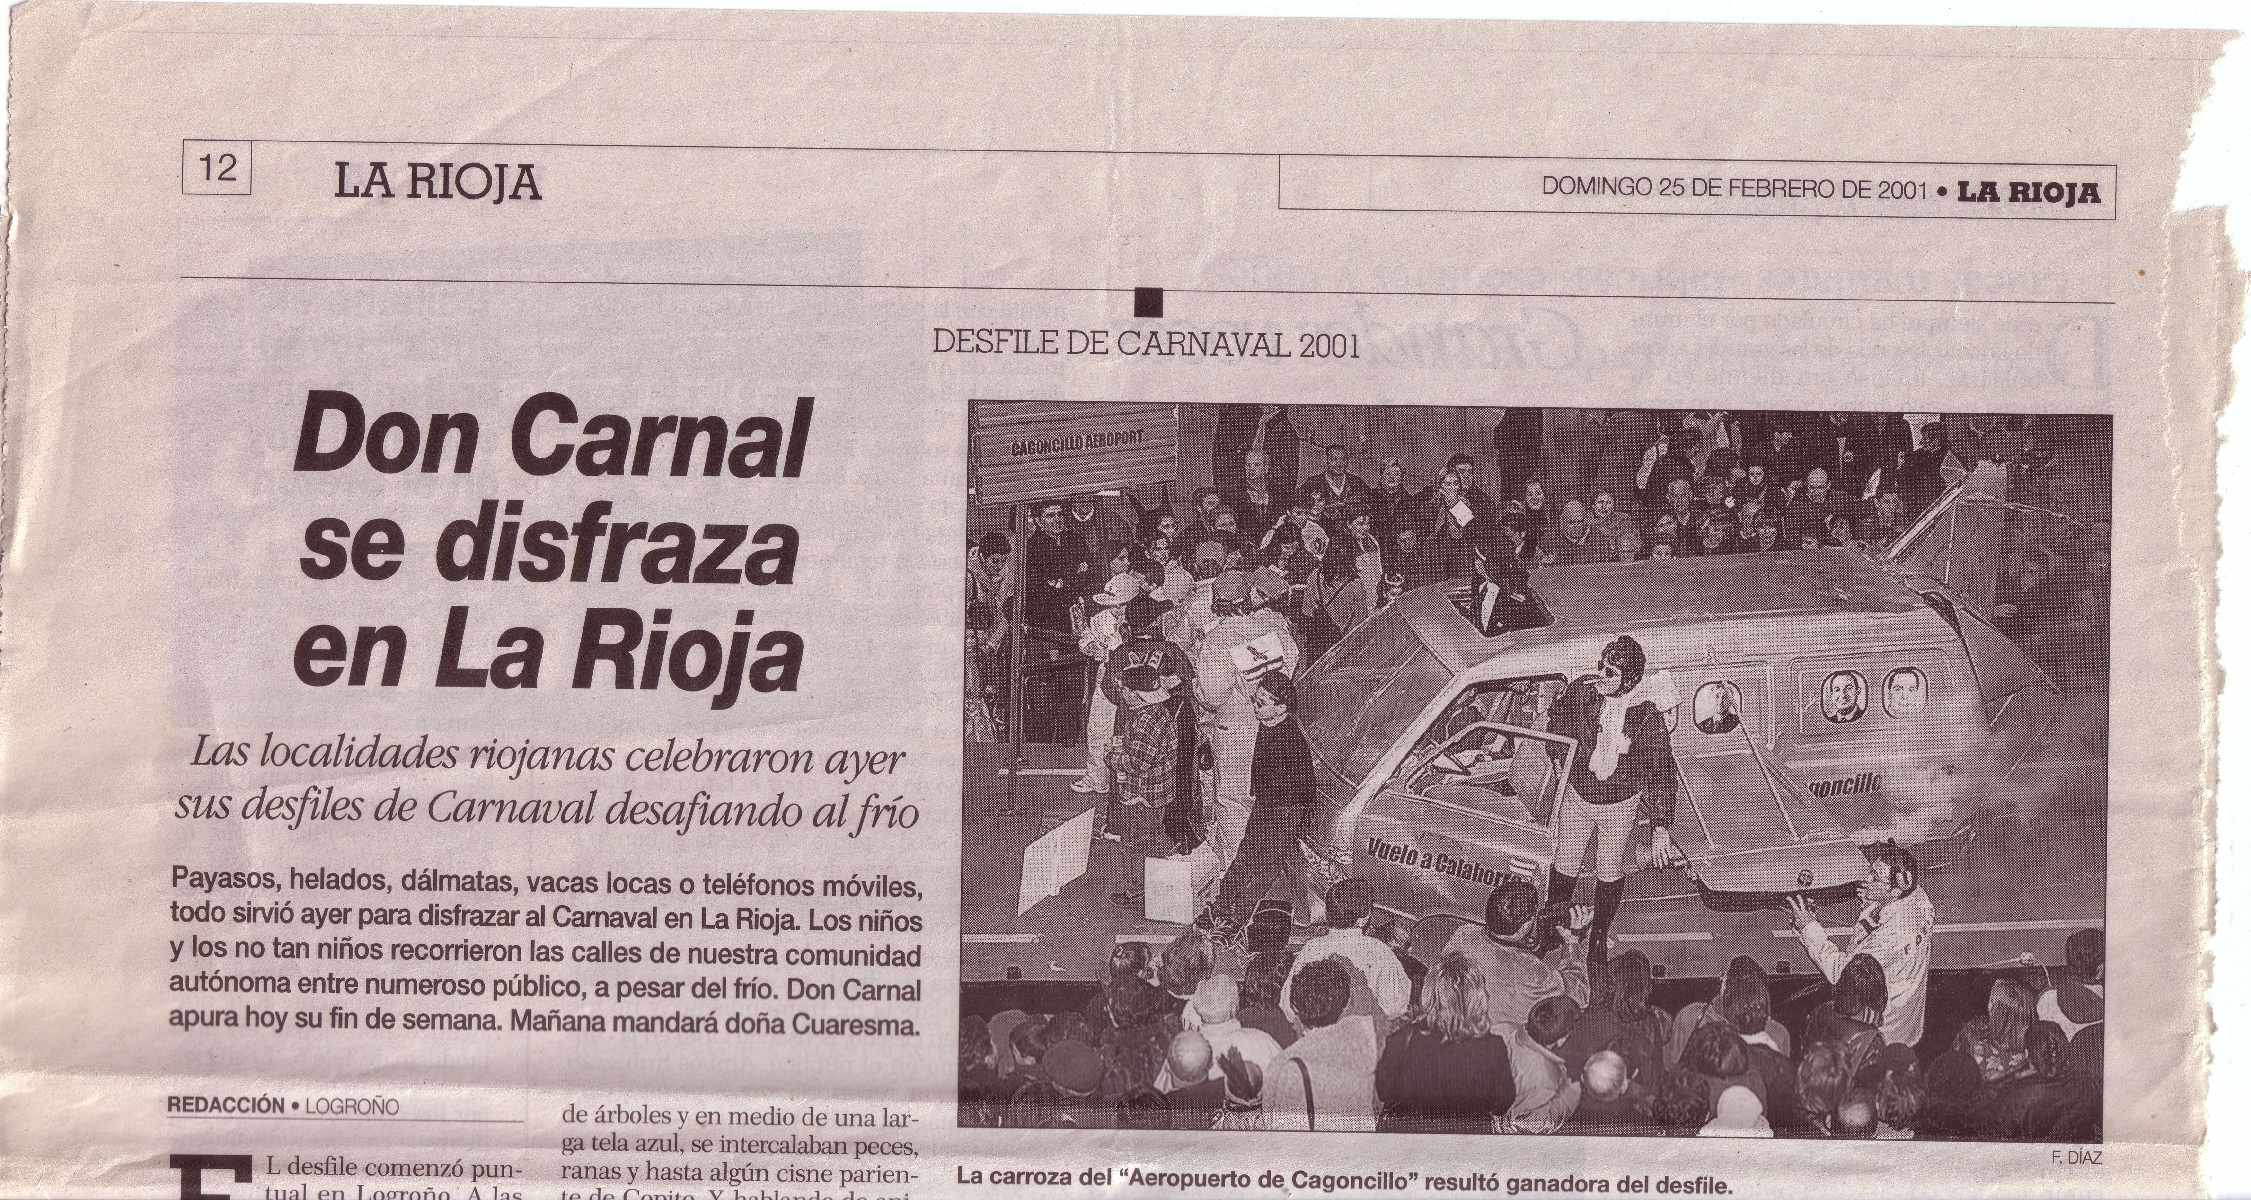 Carnaval 2001. Artículo La Rioja.1